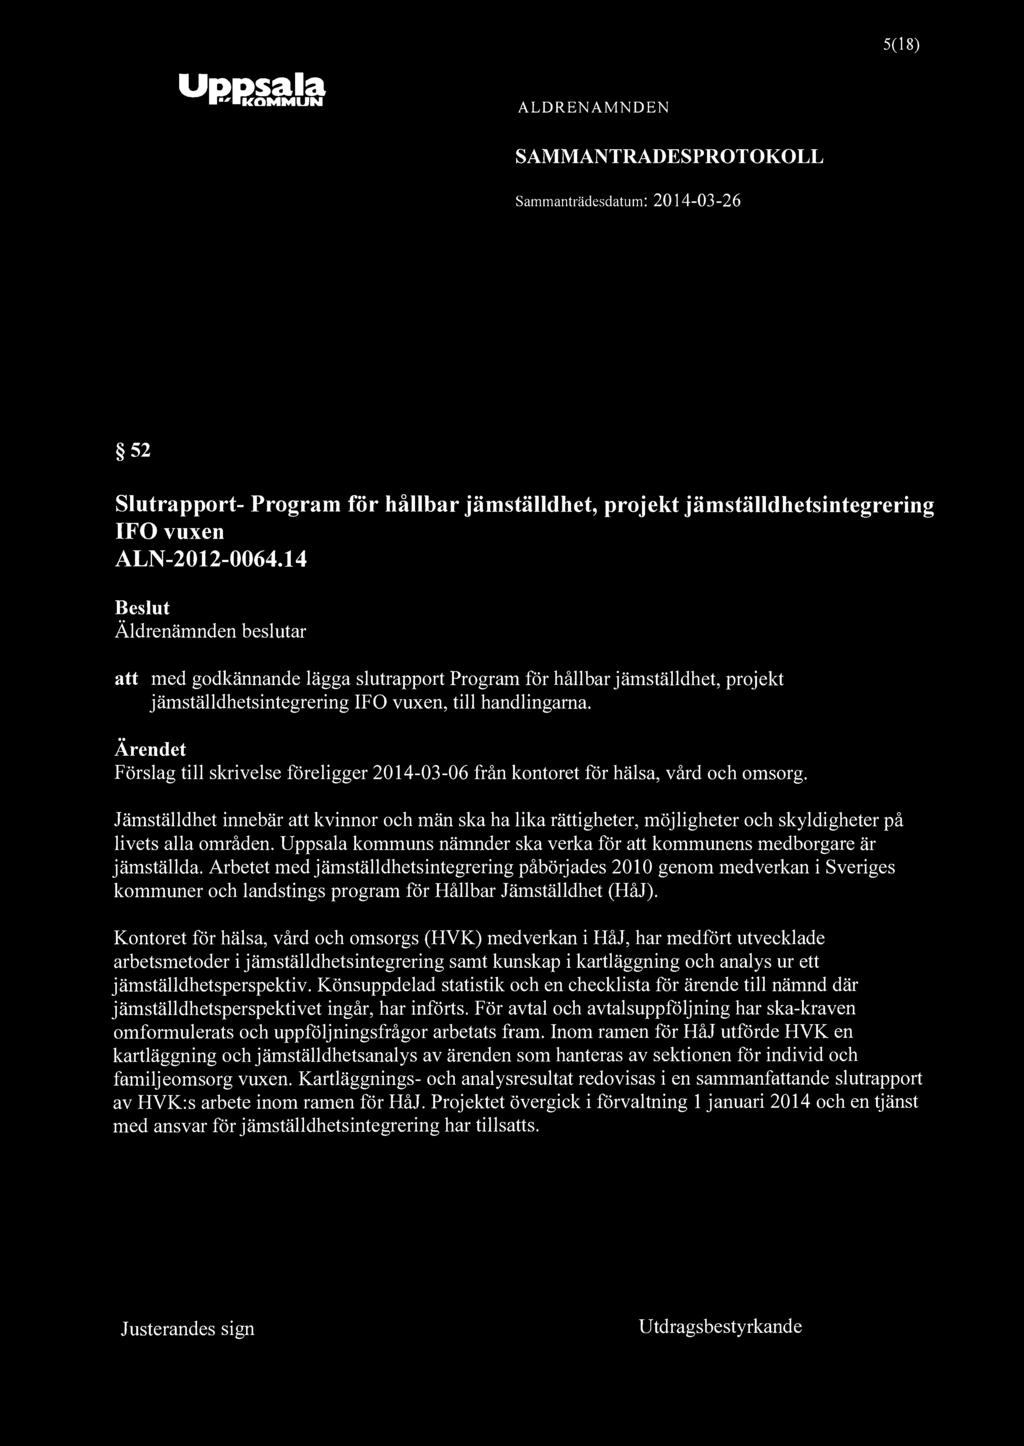 Uppsala IKOMMUN ALDRENAMNDEN SAMMANTRADESPROTOKOLL 5(18) 52 Slutrapport- Program för hållbar jämställdhet, projekt jämställdhetsintegrering IFO vuxen ALN-2012-0064.